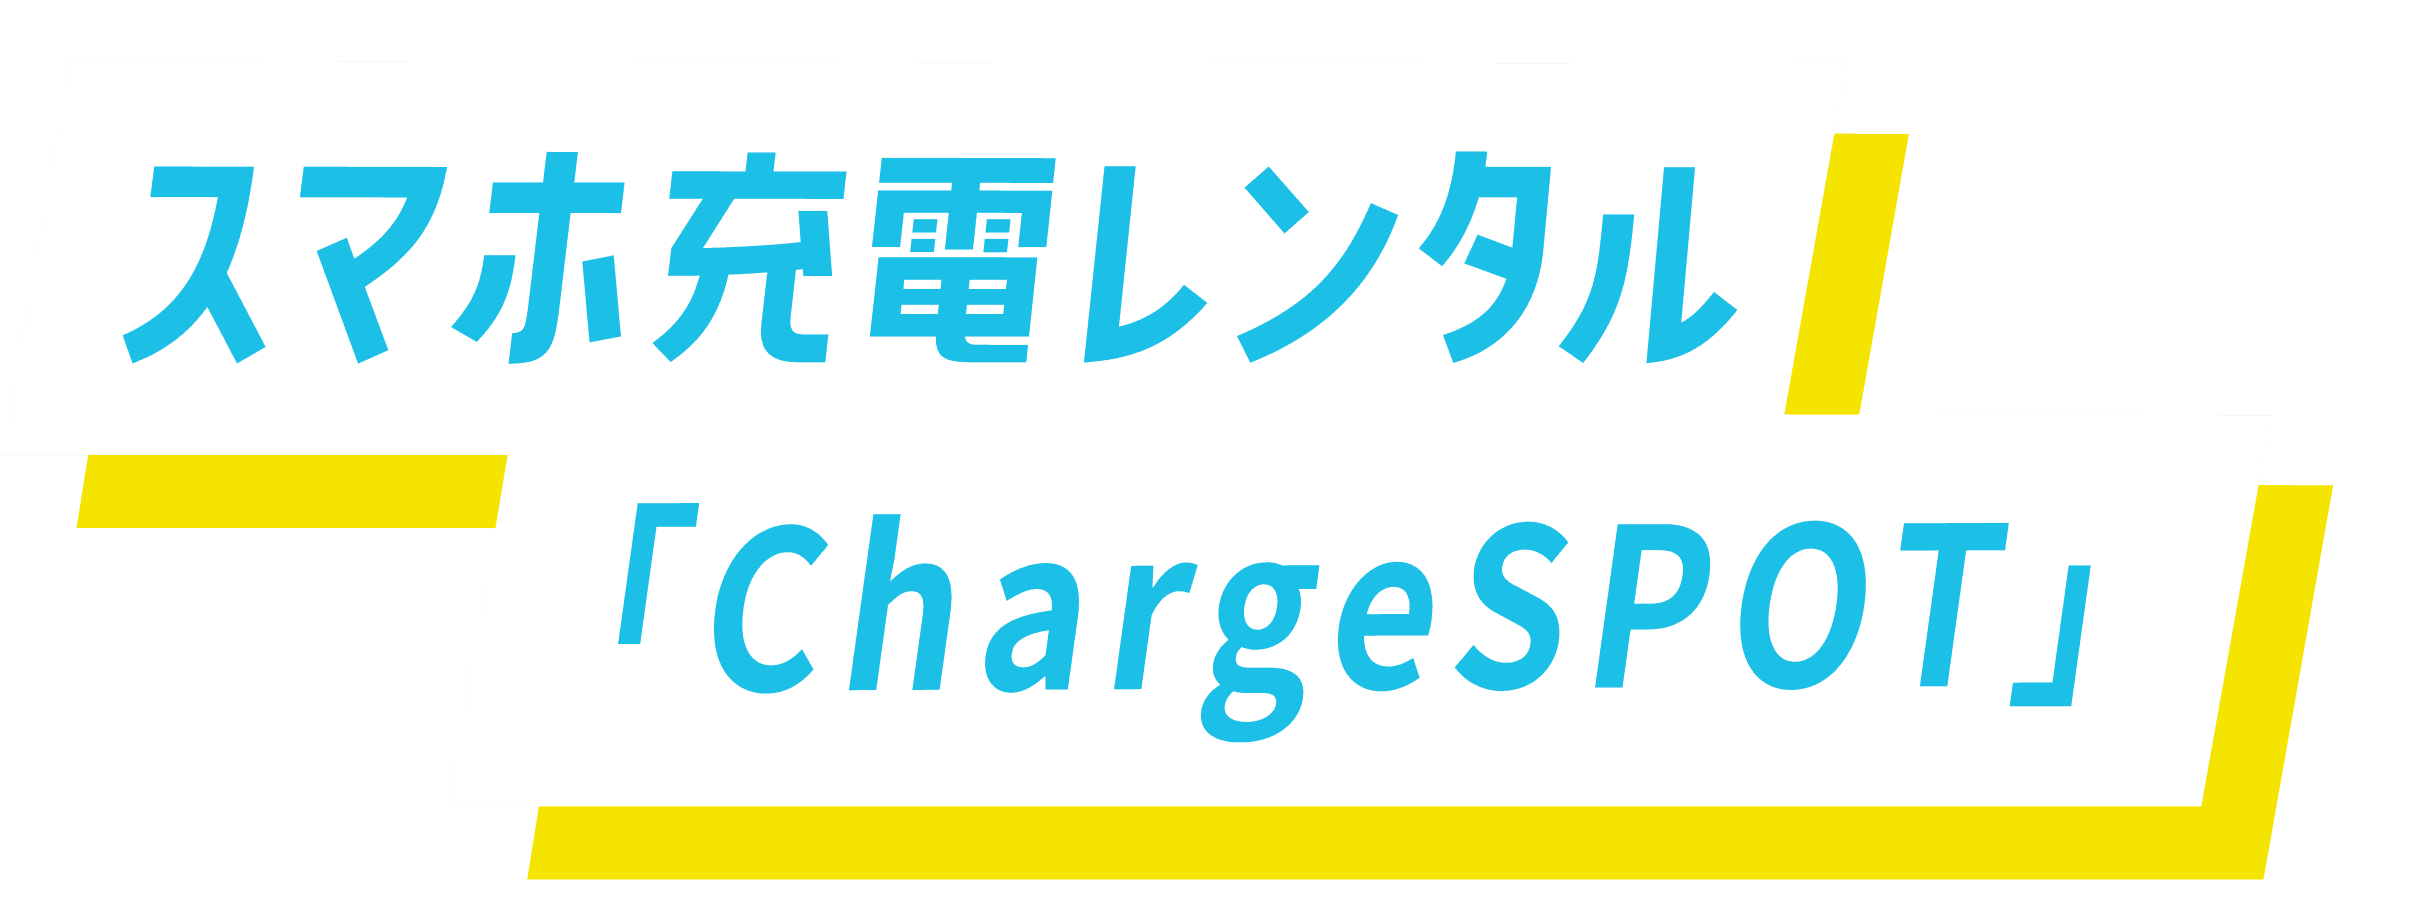 スマホ充電レンタル「ChargeSPOT」